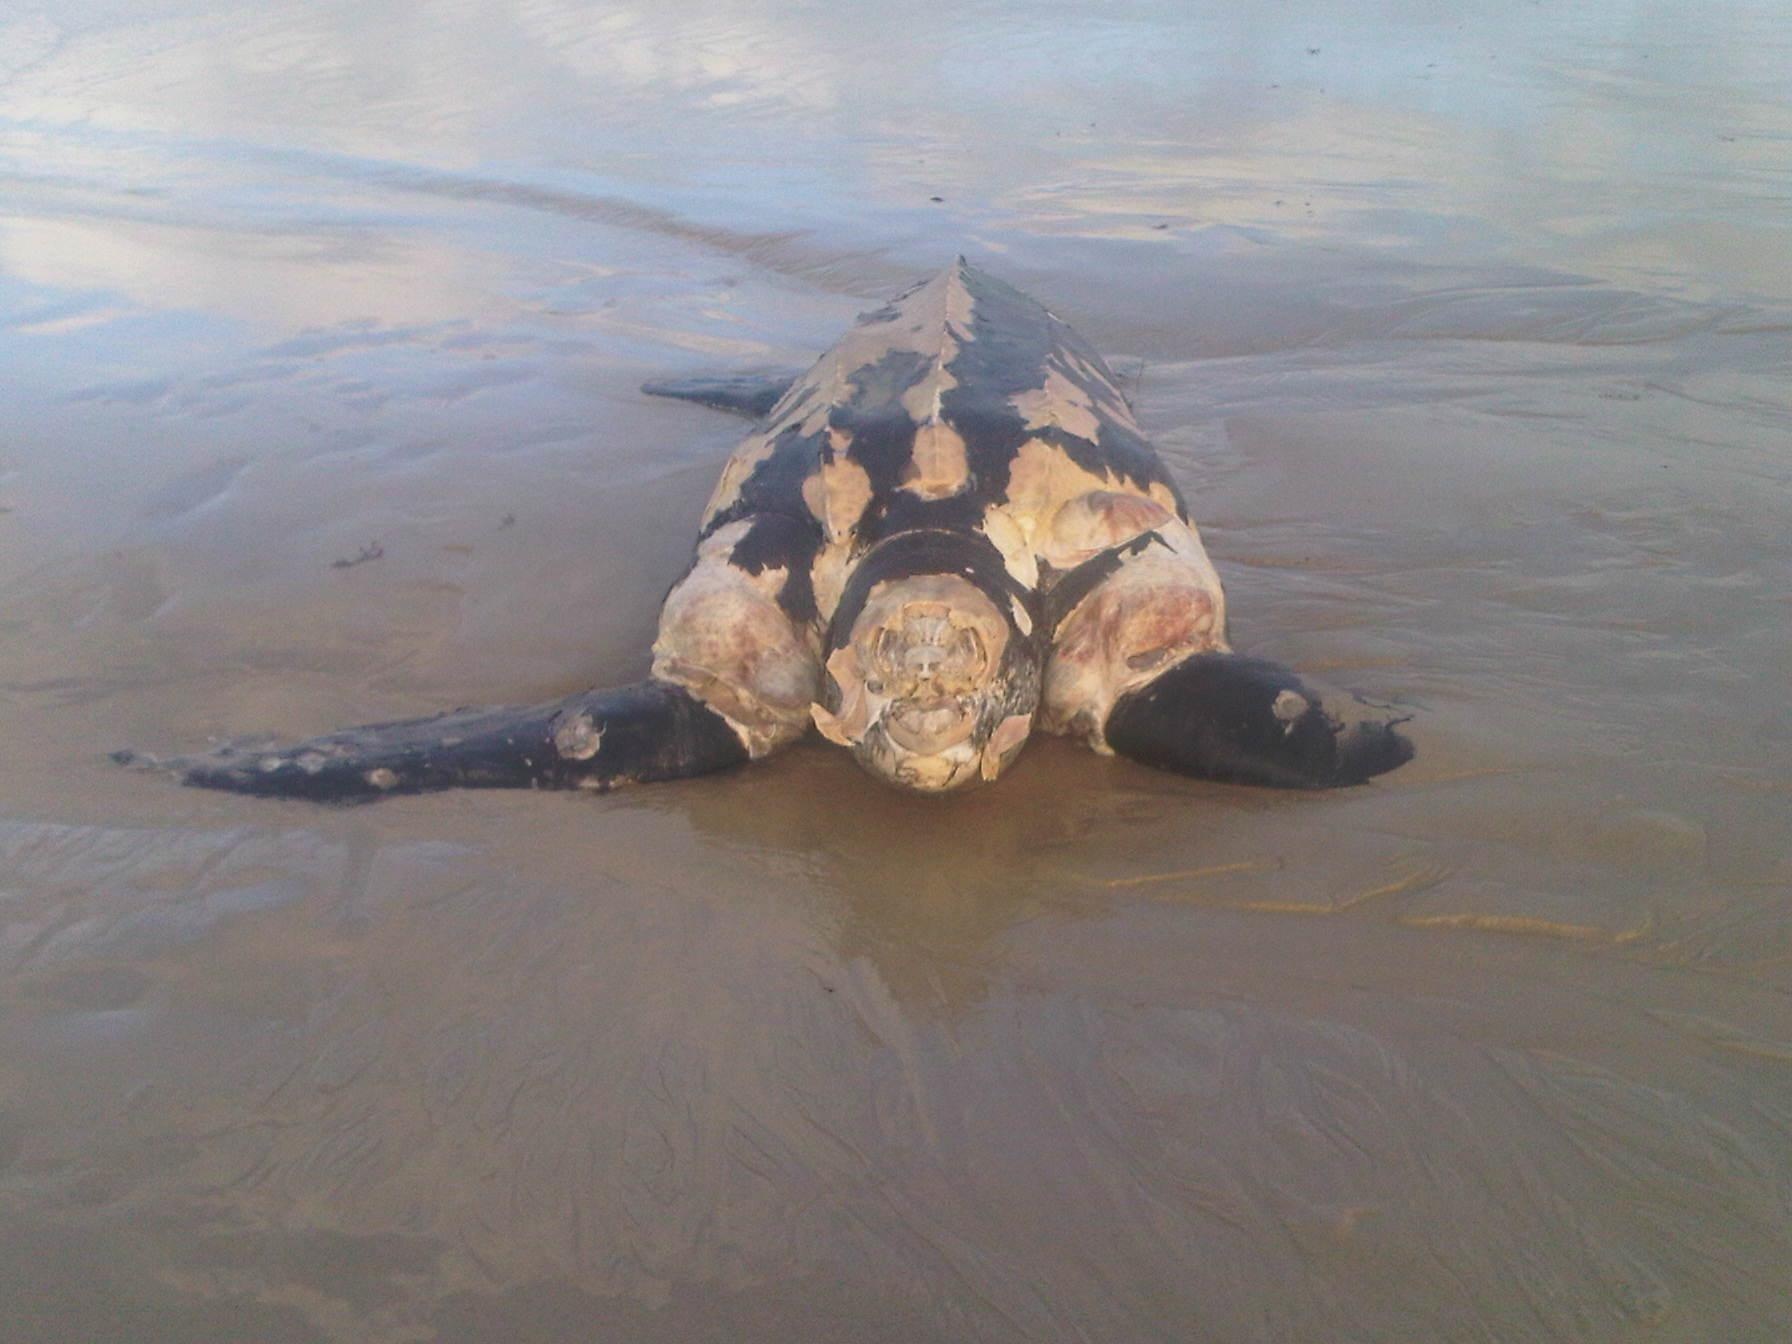 Aparece muerta una tortuga laúd en la playa de Samil, en Vigo